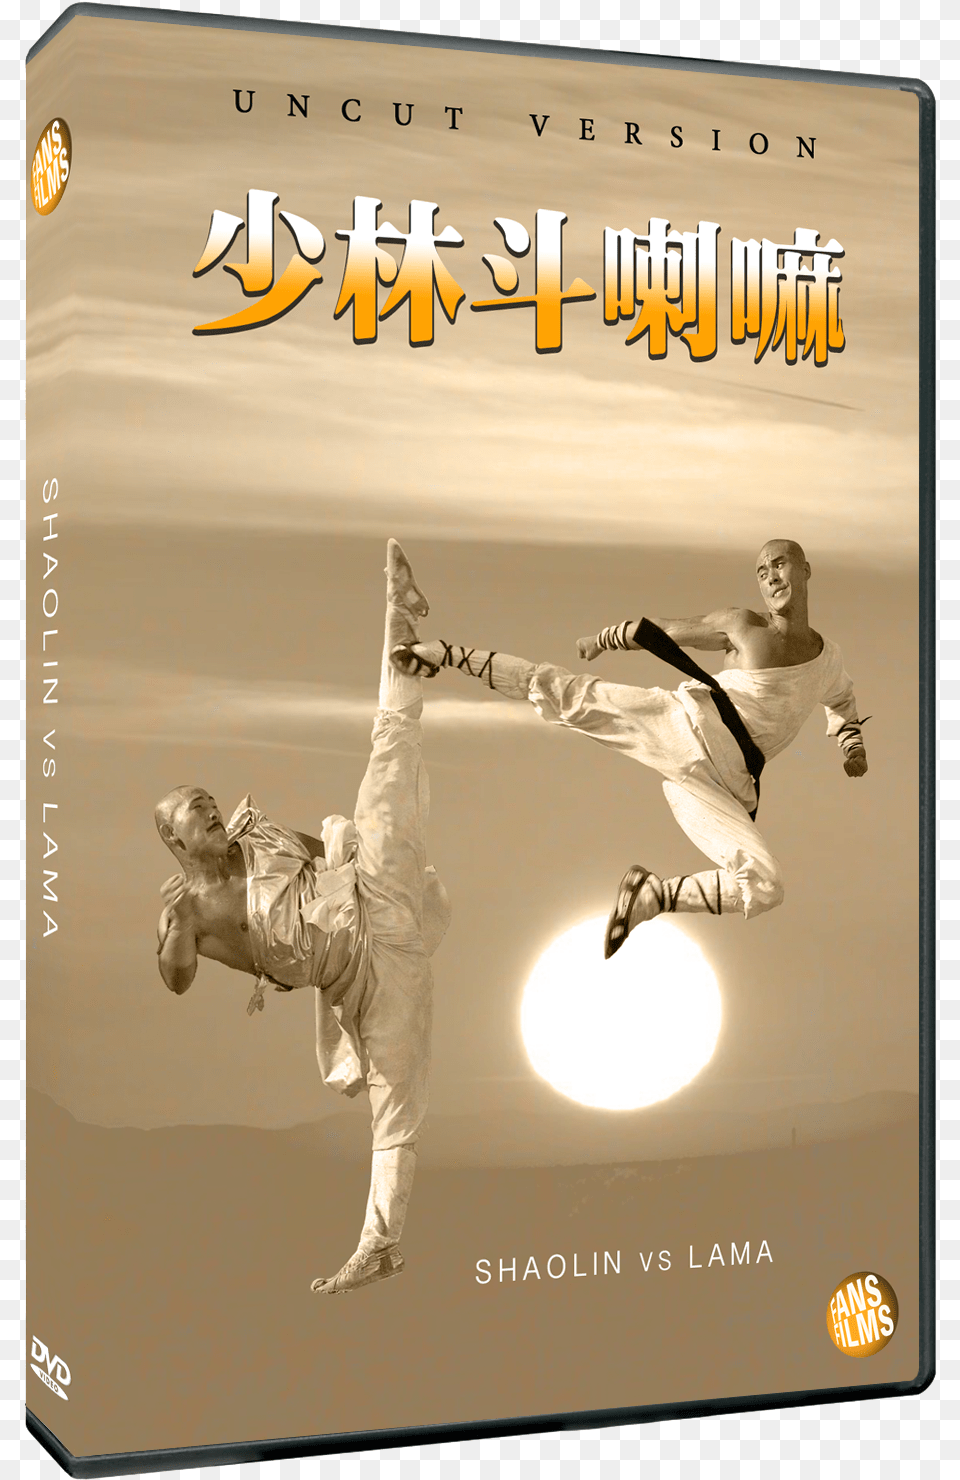 Shaolin Vs Lama Ad Poster, Judo, Martial Arts, Person, Sport Free Transparent Png